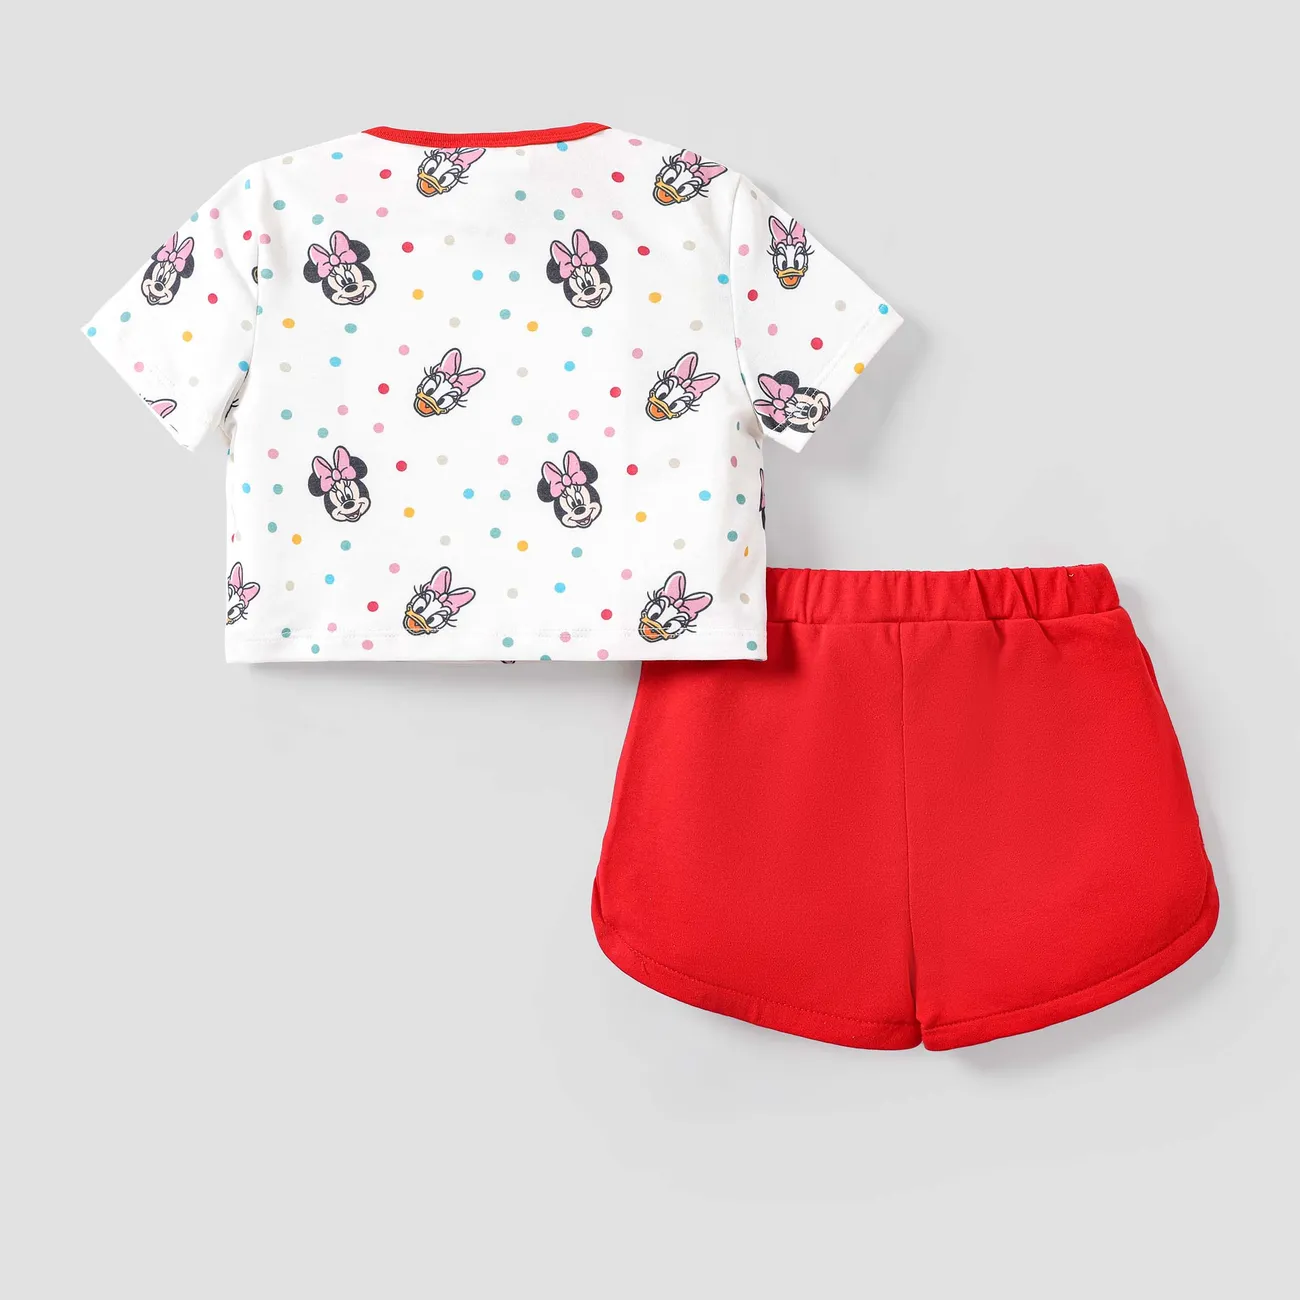 Disney Mickey and Friends 2 unidades Niño pequeño Chica Infantil conjuntos de camiseta rojo blanco big image 1